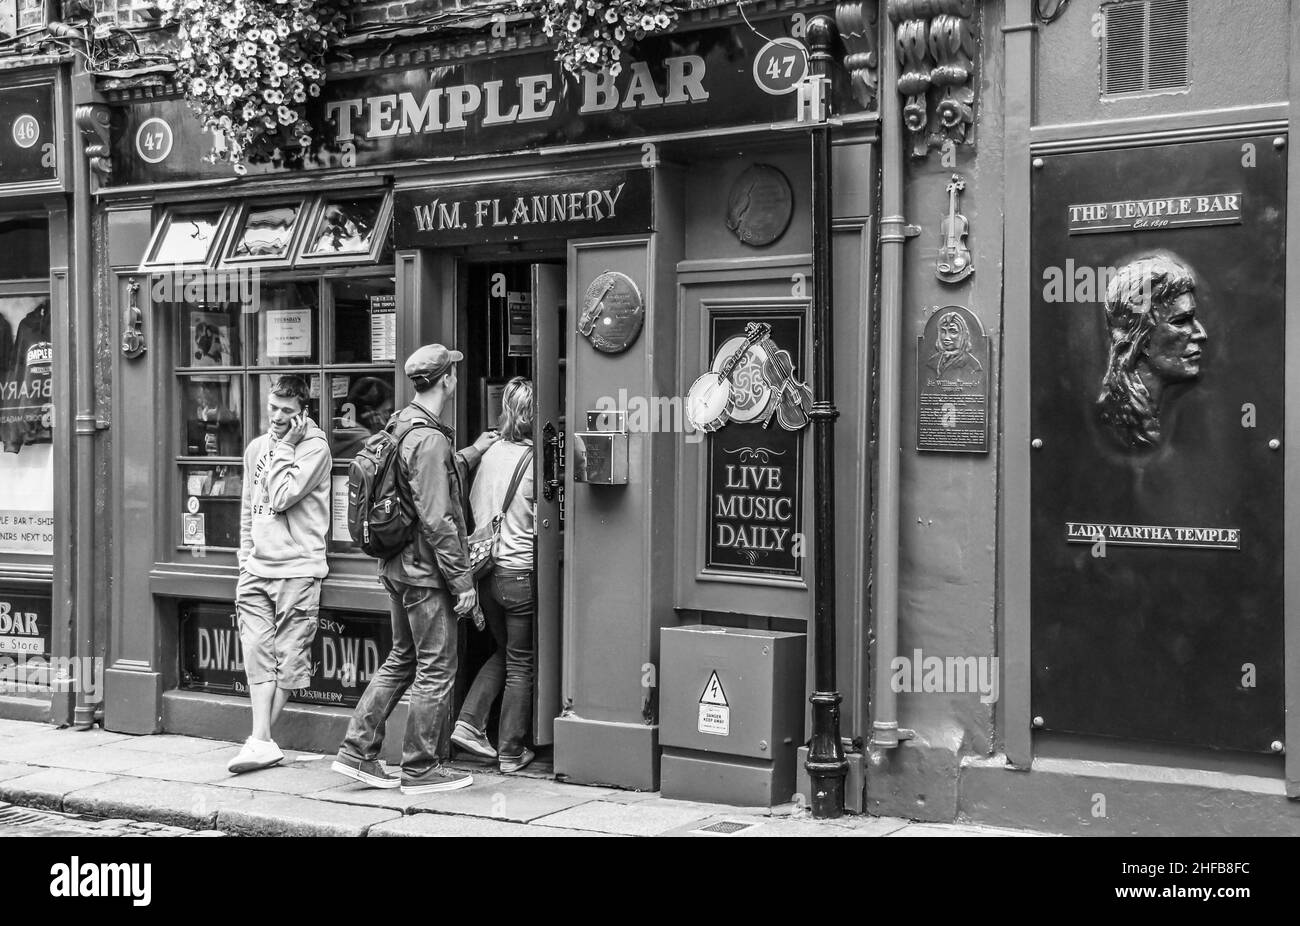 Zwei Jugendliche betreten die Temple Bar in Dublin, ein weiter männlicher Jugendlicher telefoniert in lässiger Haltung mit seinem Smartphone Stockfoto